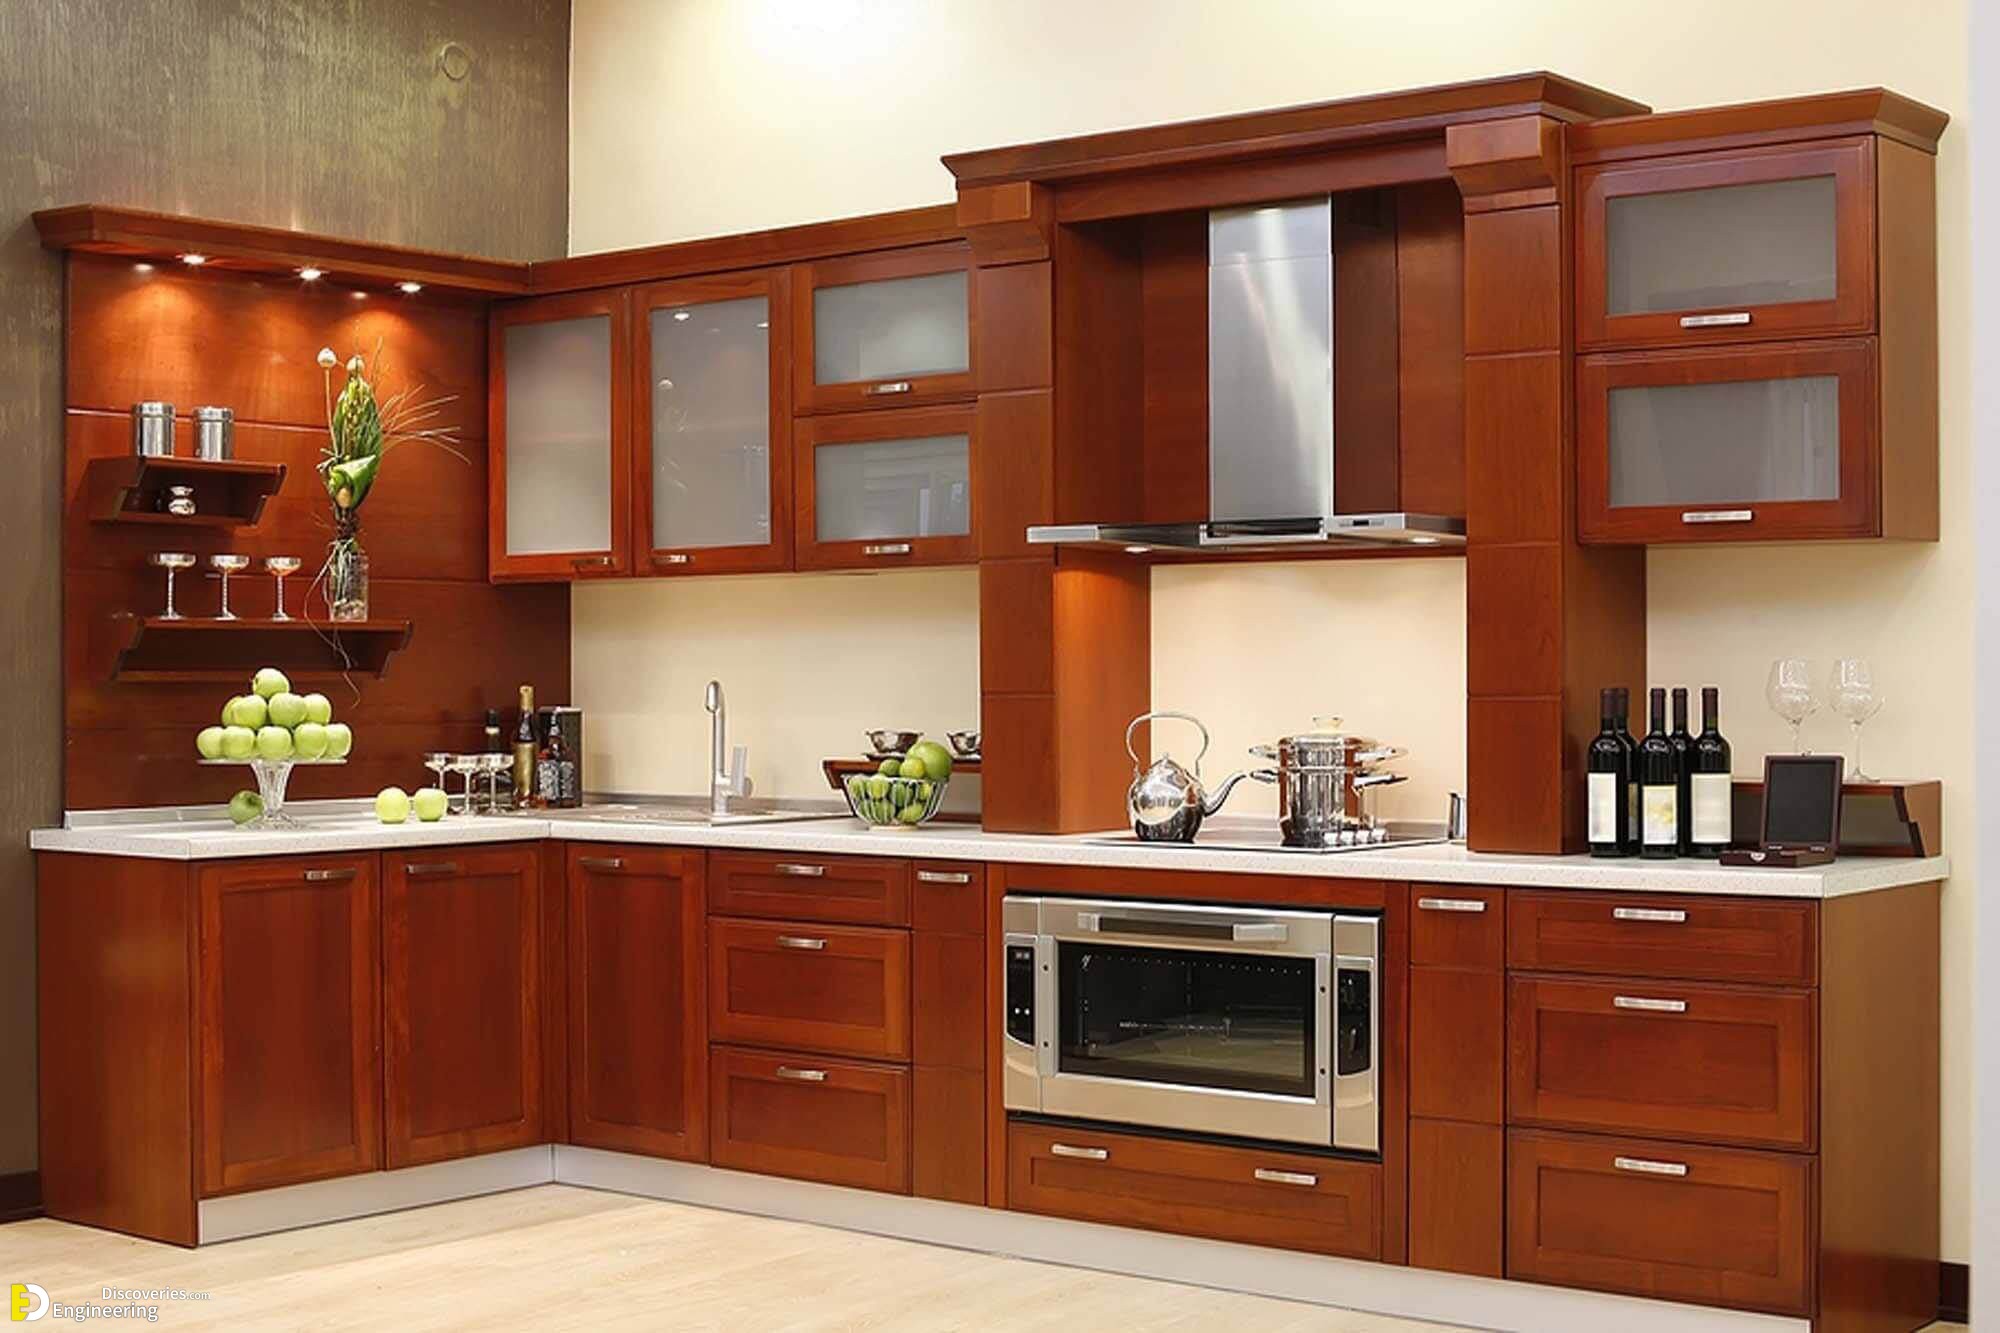 design of cupboard in kitchen